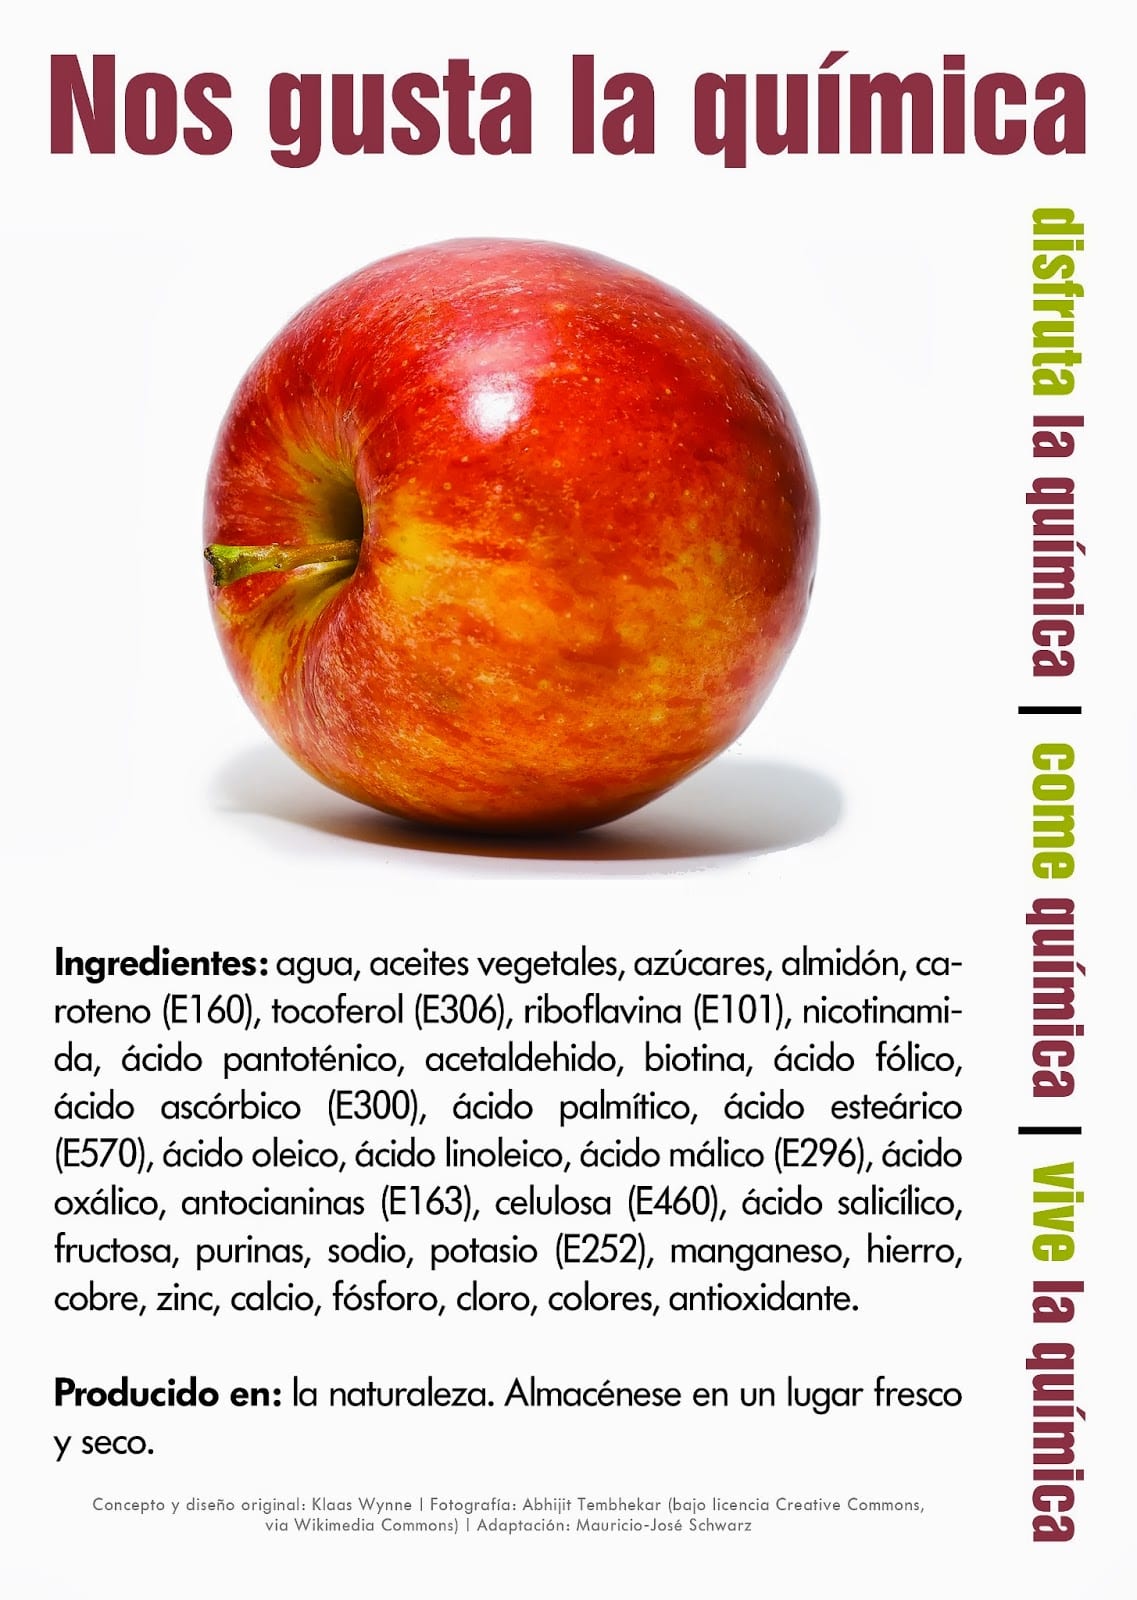 Composición química de una manzana.